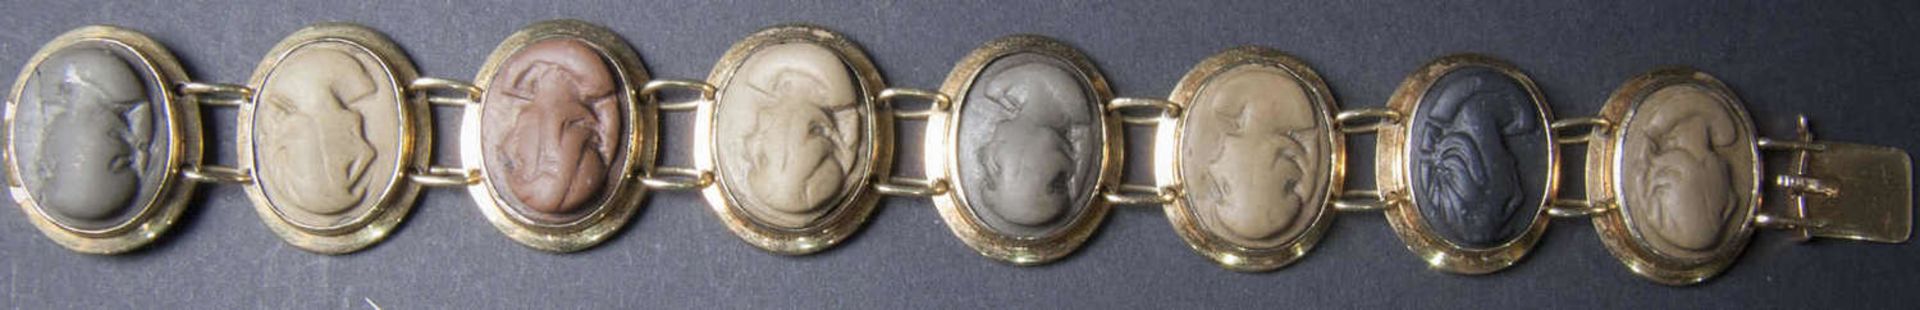 Gemmen - Armband, Gold 585, gepunzt. Länge: ca. 18 cm. Breite: ca. 22 mm. Verschieden farbige